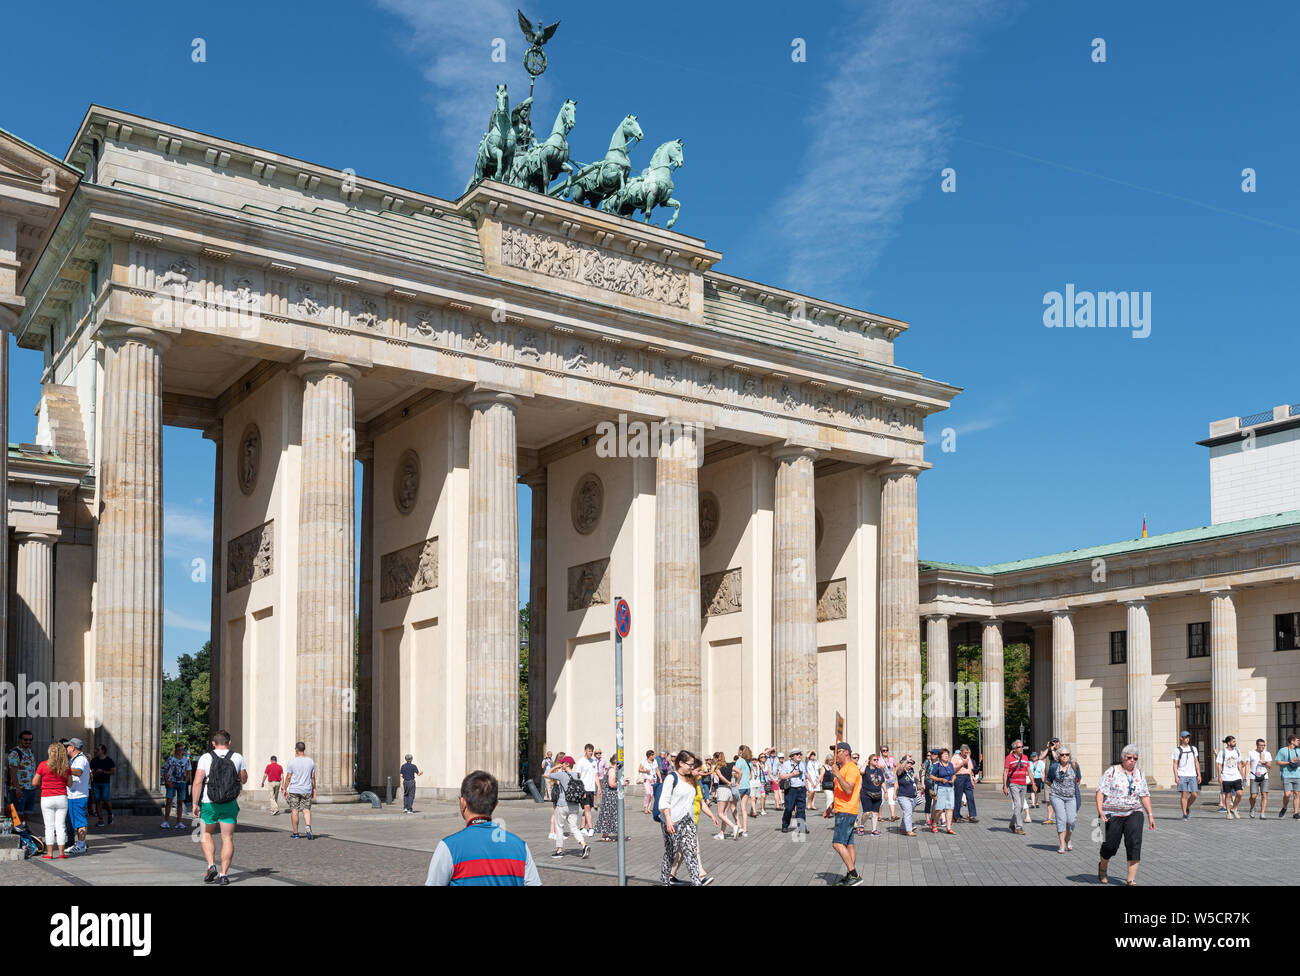 2019-24-07 Berlin, Germania: gruppi di turisti a Pariser Platz guardando la Porta di Brandeburgo sulla soleggiata giornata estiva Foto Stock